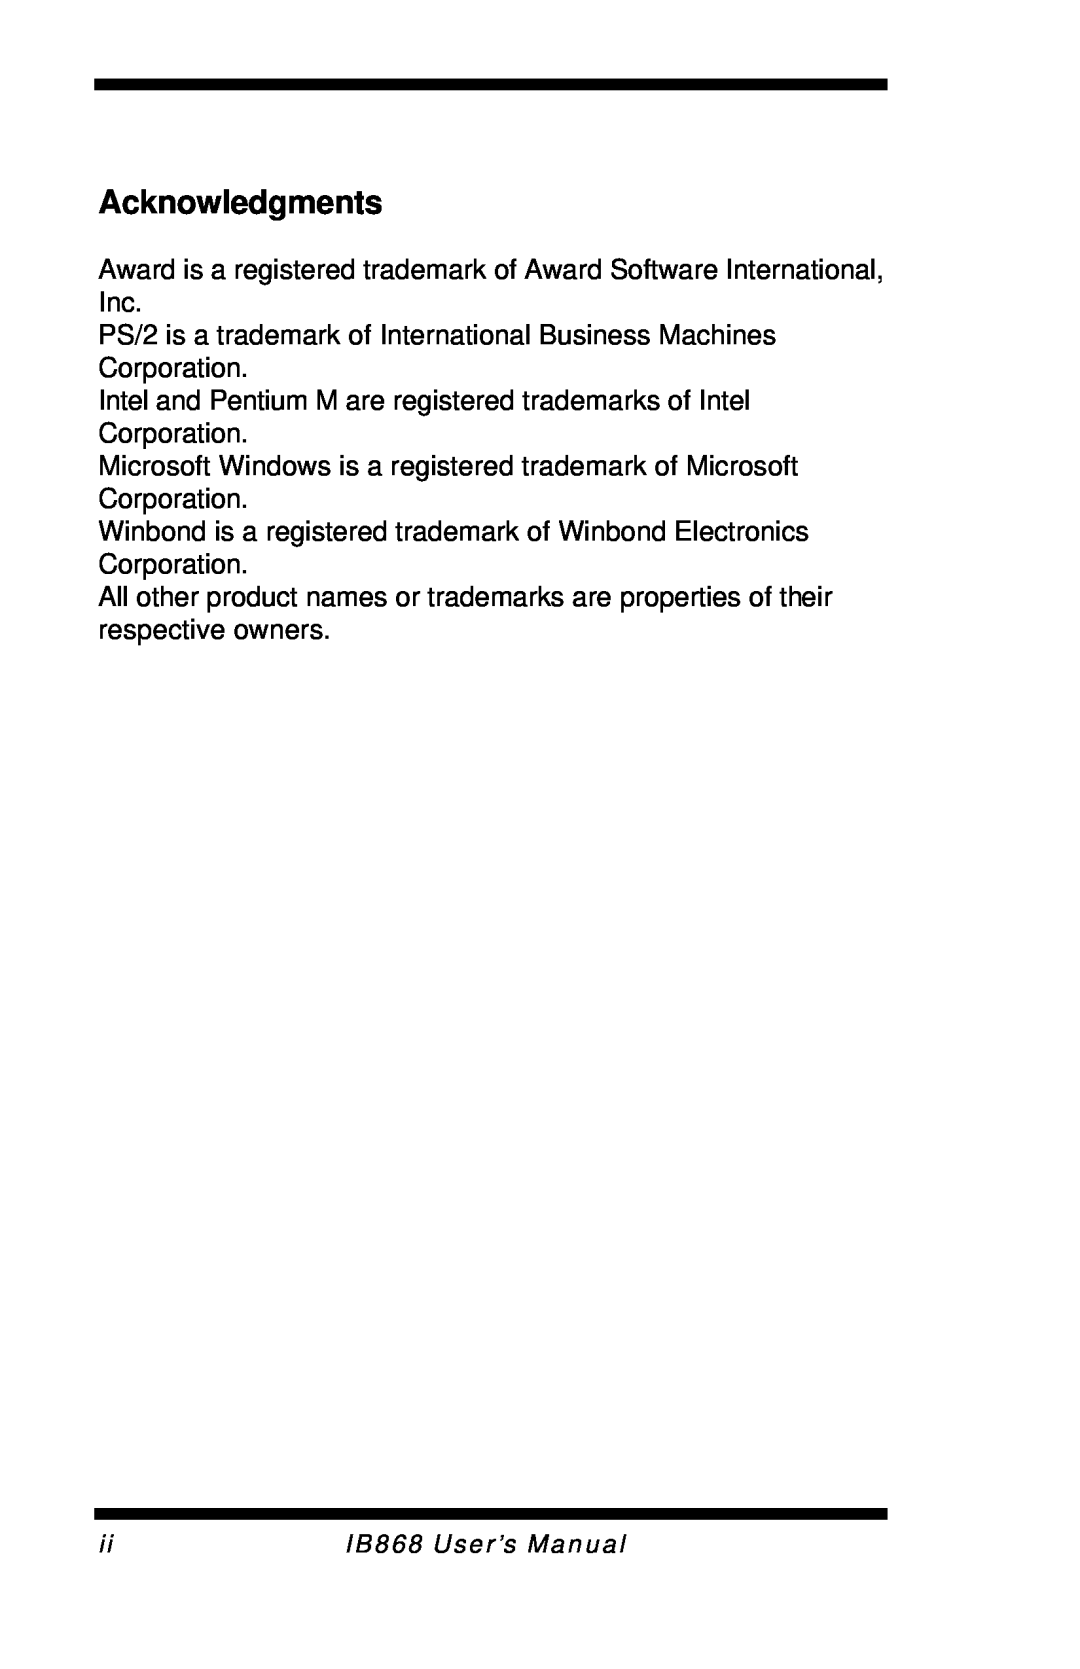 Intel user manual Acknowledgments, IB868 User’s Manual 